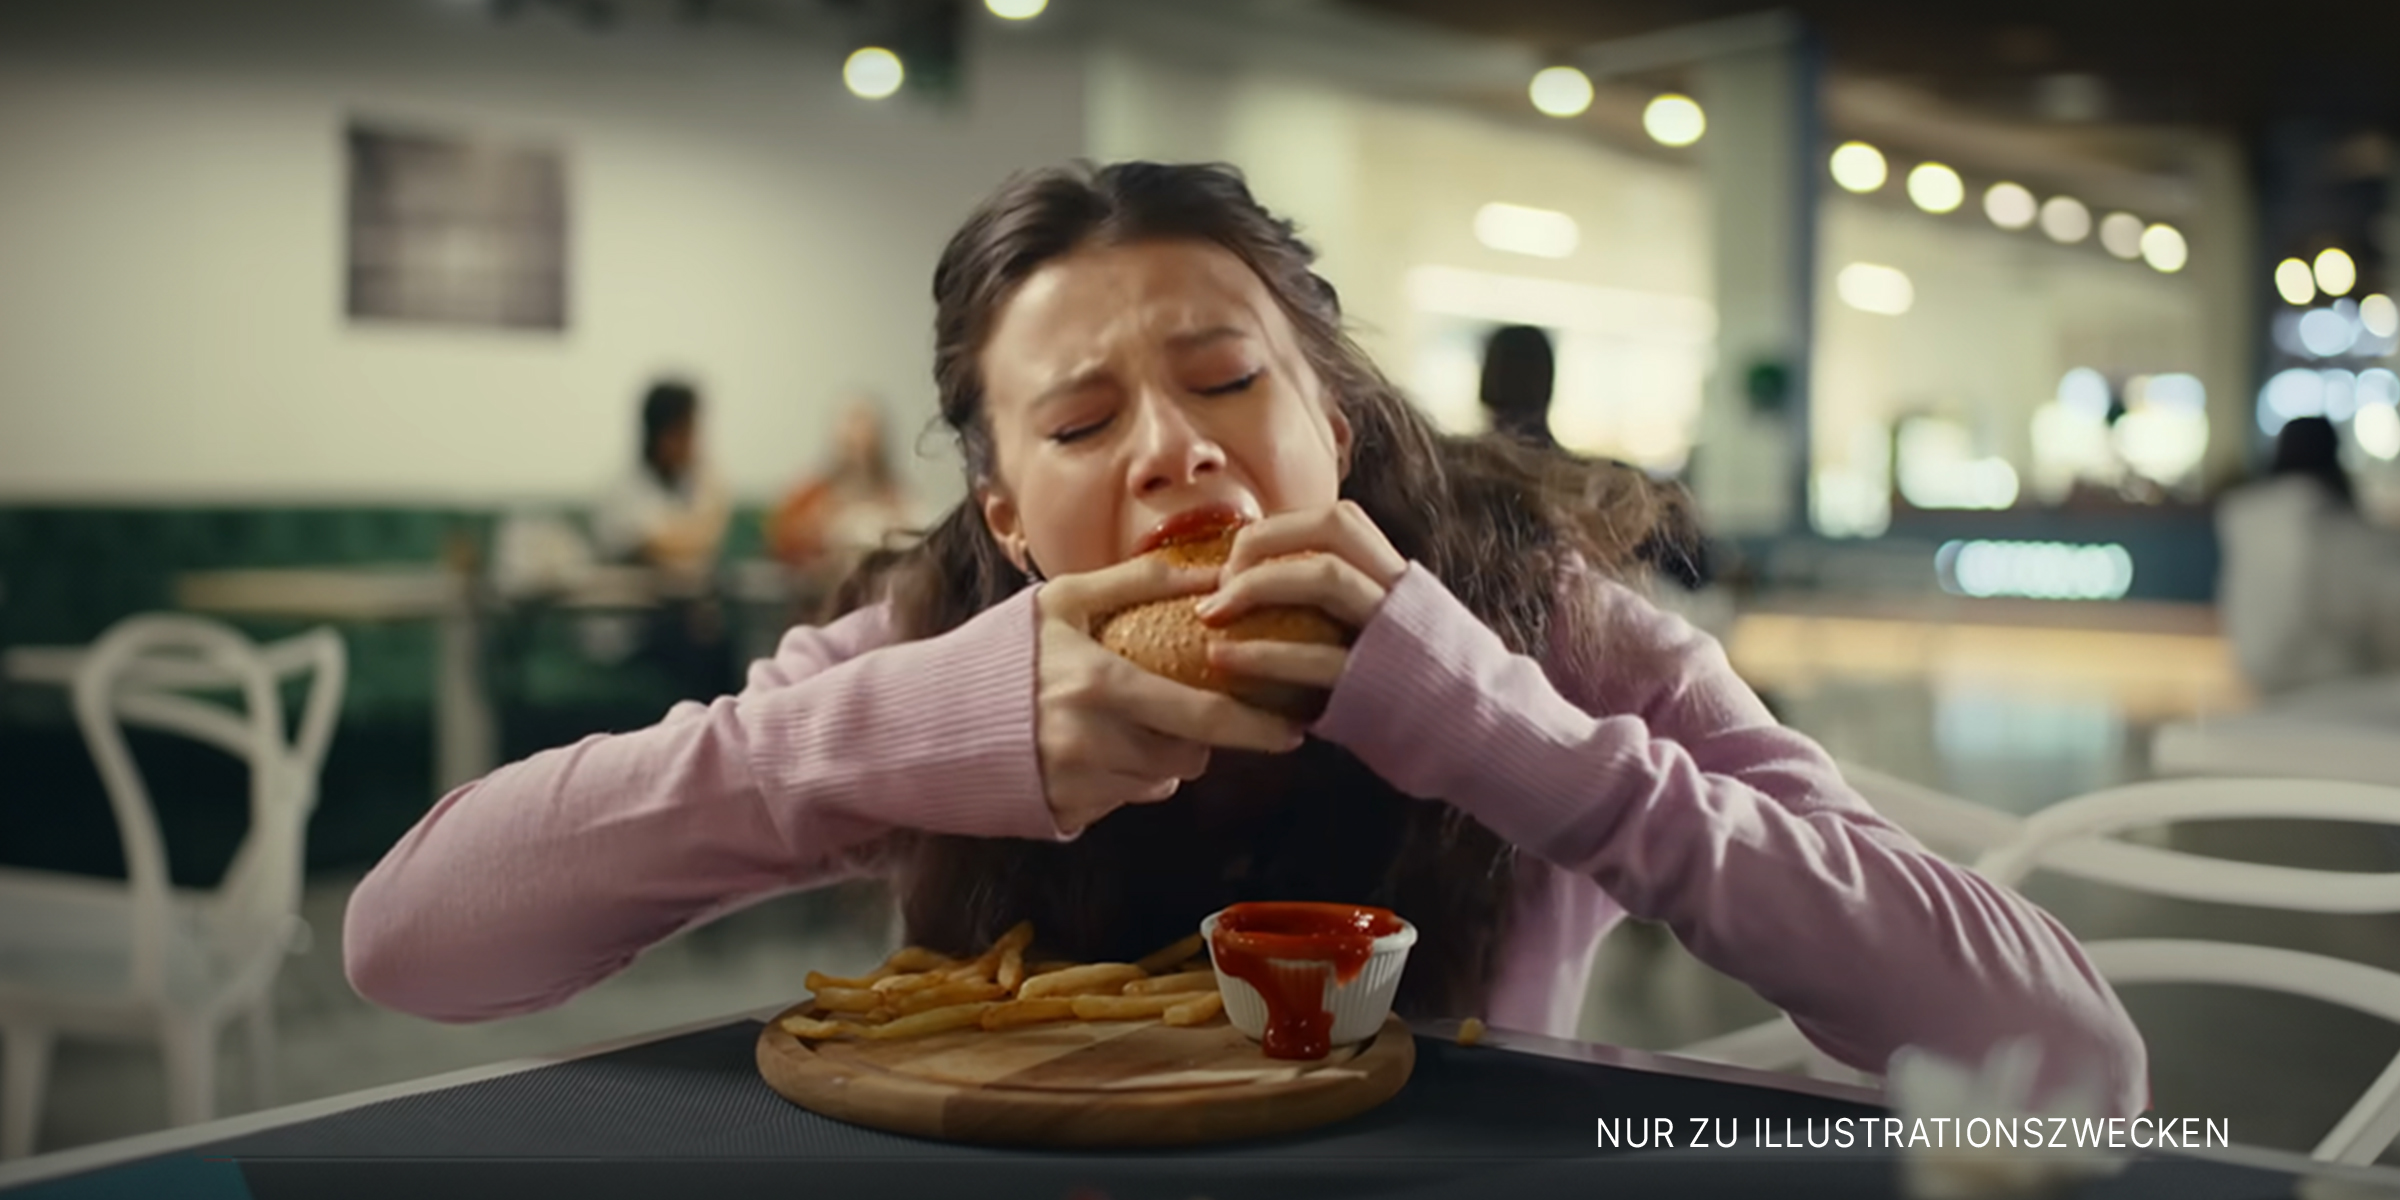 Mädchen isst hektisch einen Burger | Quelle: YouTube/LoveBuster